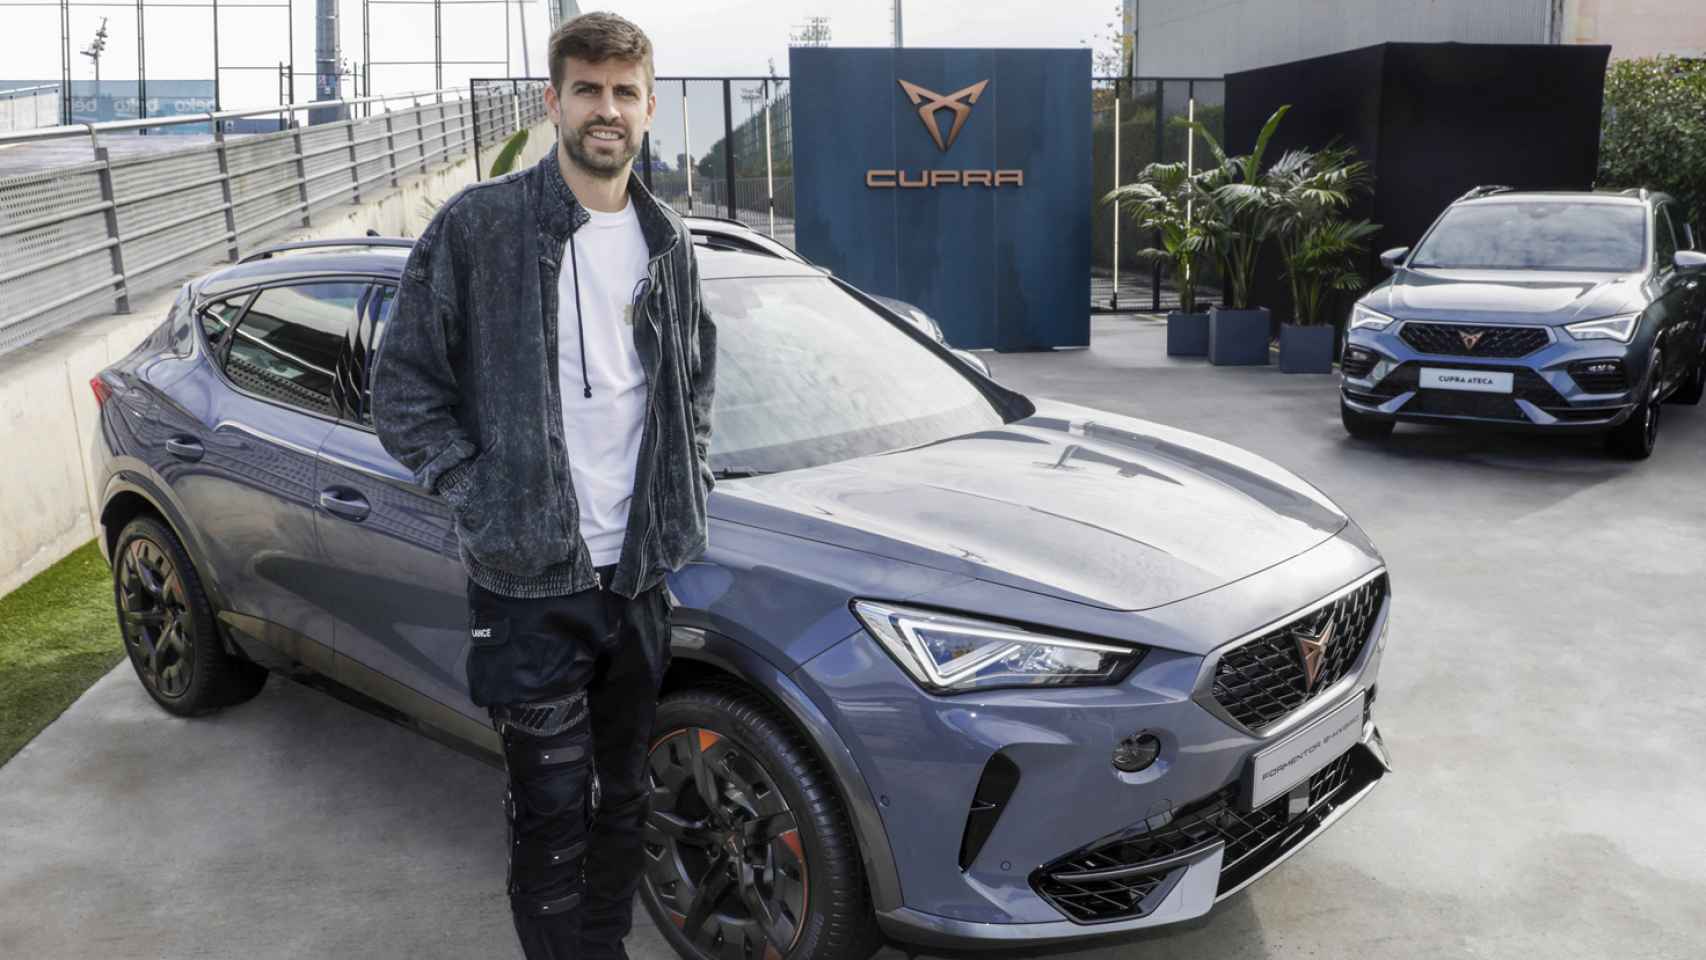 Gerard Piqué junto al Cupra Formentor, el SUV deportivo de la marca de Seat.